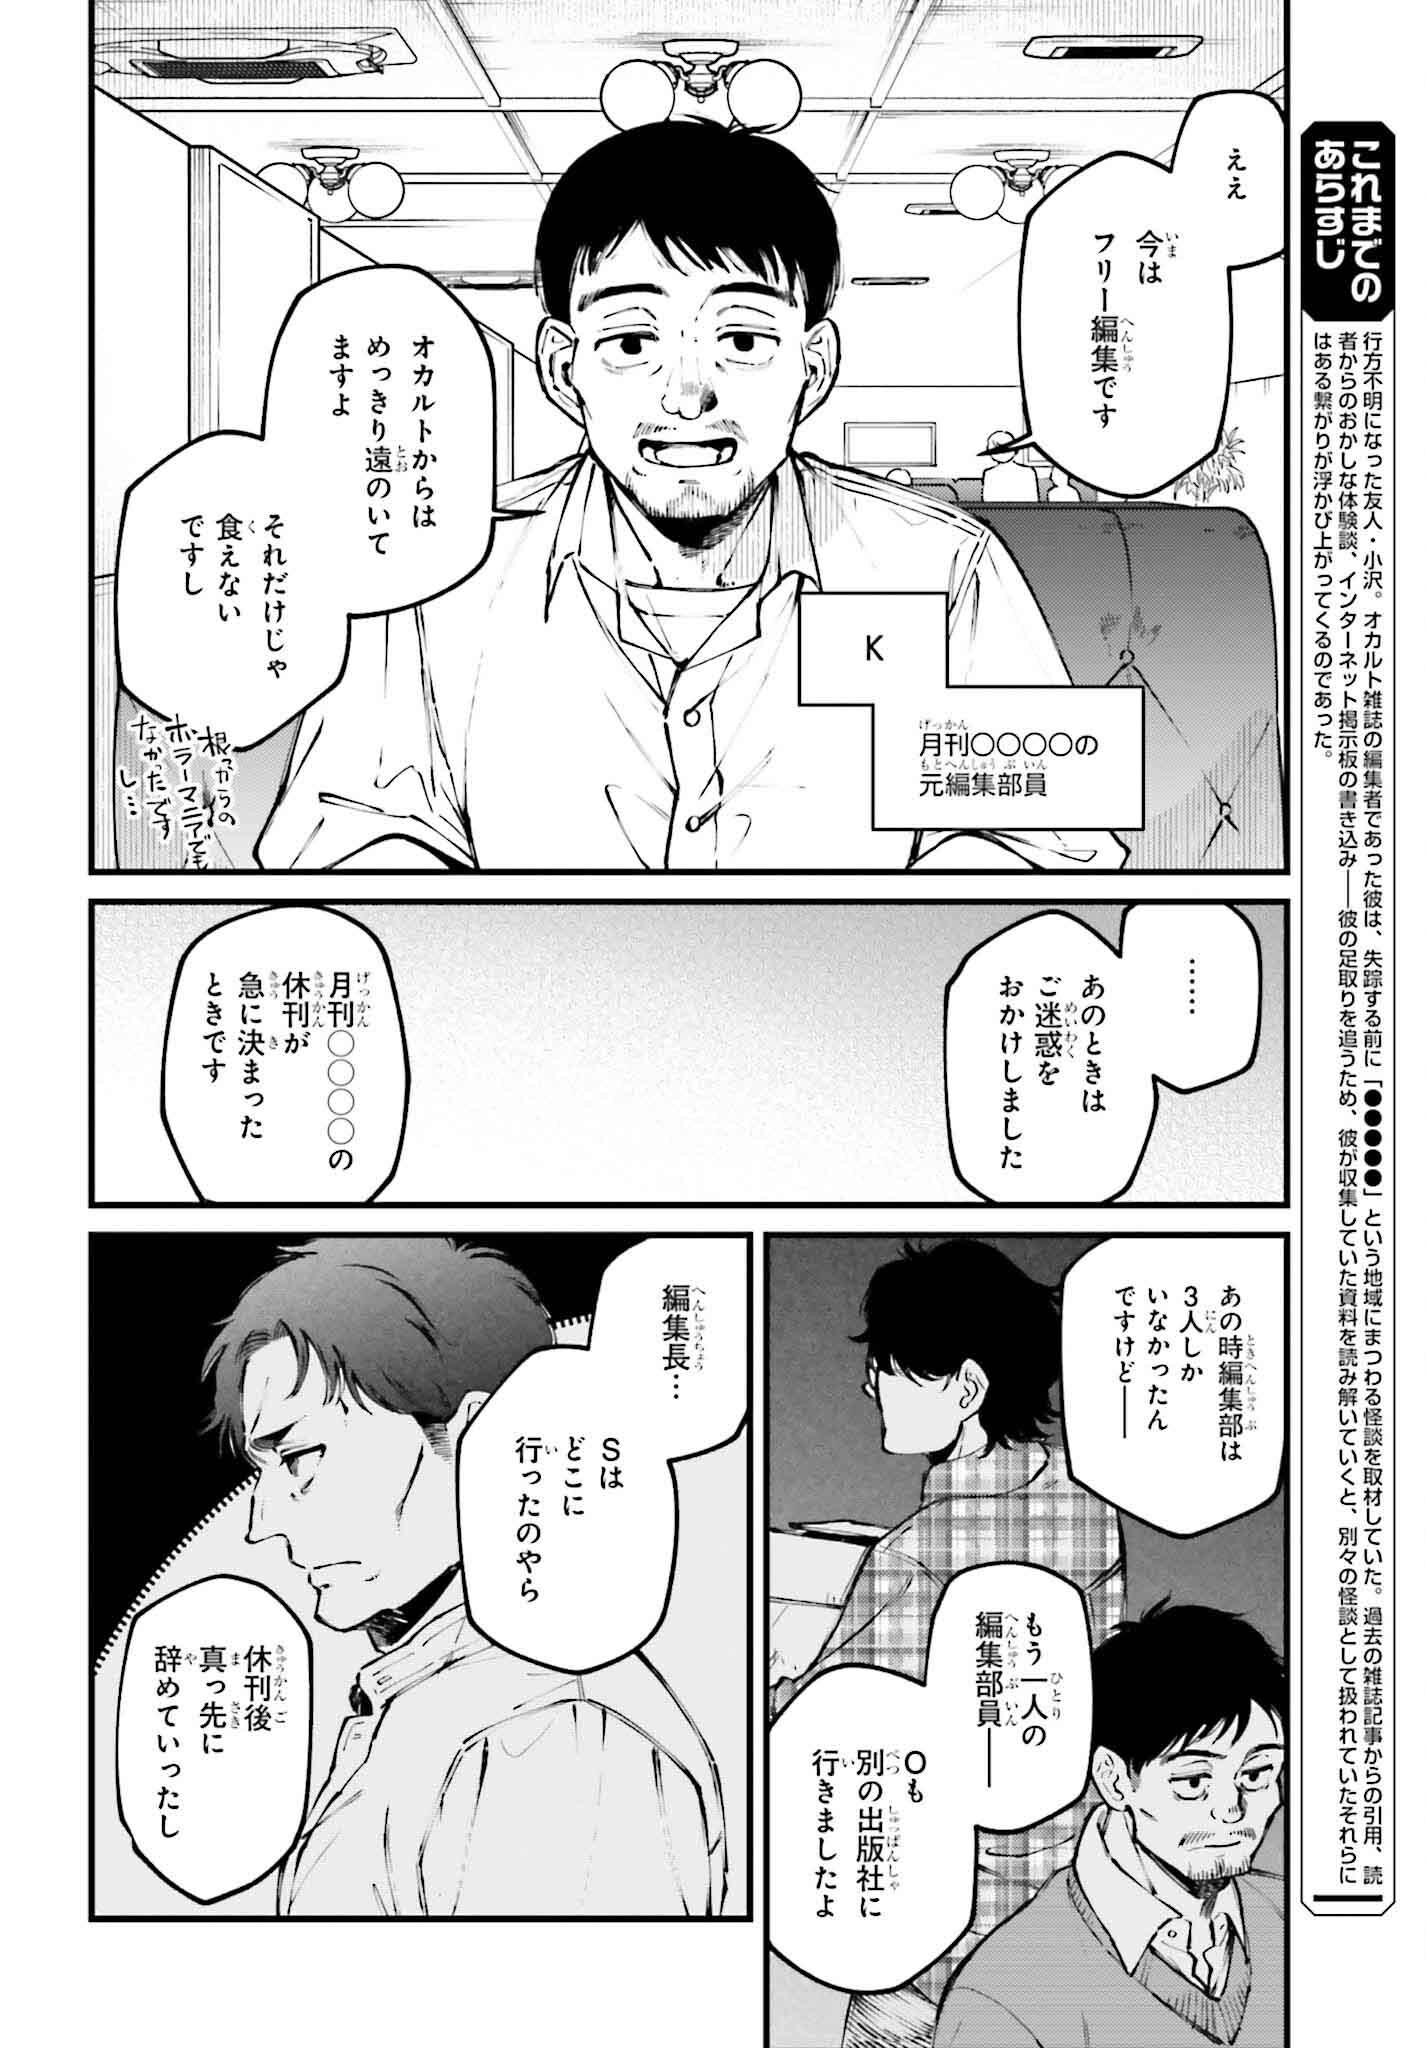 Kinki Chihou no Aru Basho ni Tsuite - Chapter 7 - Page 2